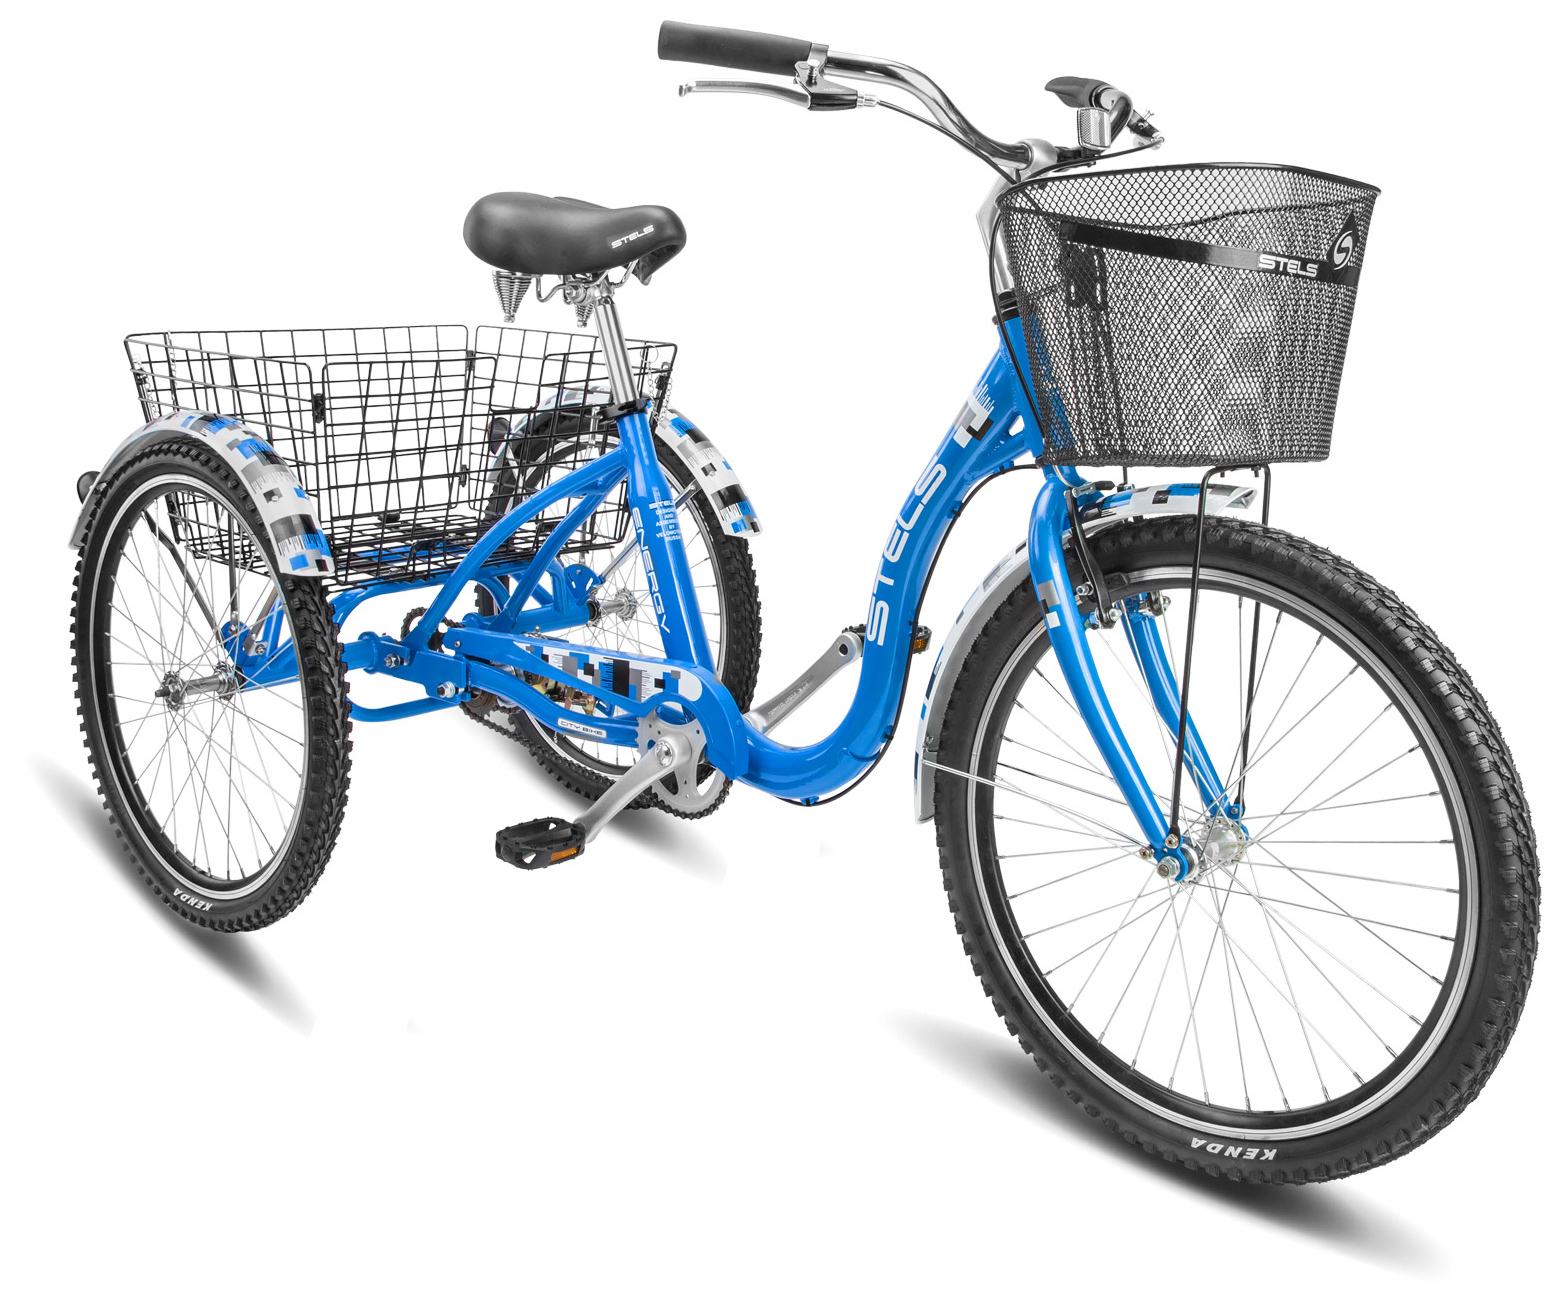  Отзывы о Городском велосипеде Stels Energy IV (V020) 2019